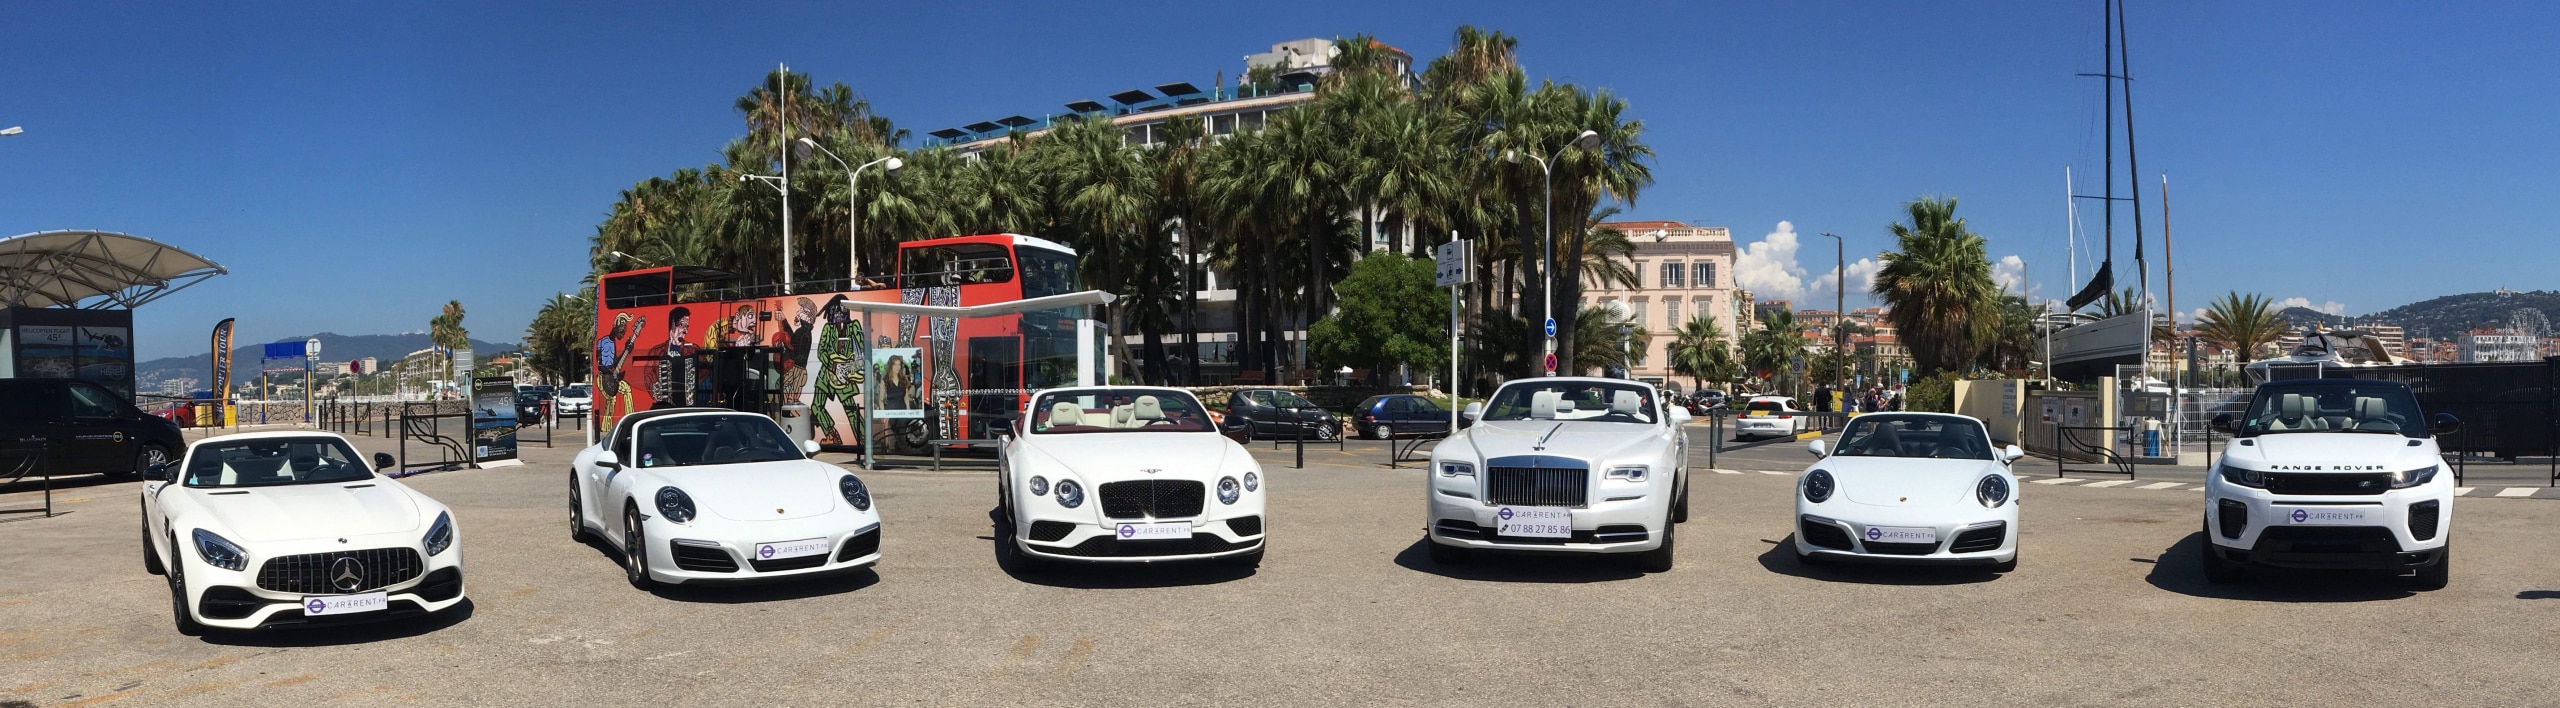 Location de voiture de sport sur la Côte d'azur, White-collection-Car4rent-Cannes